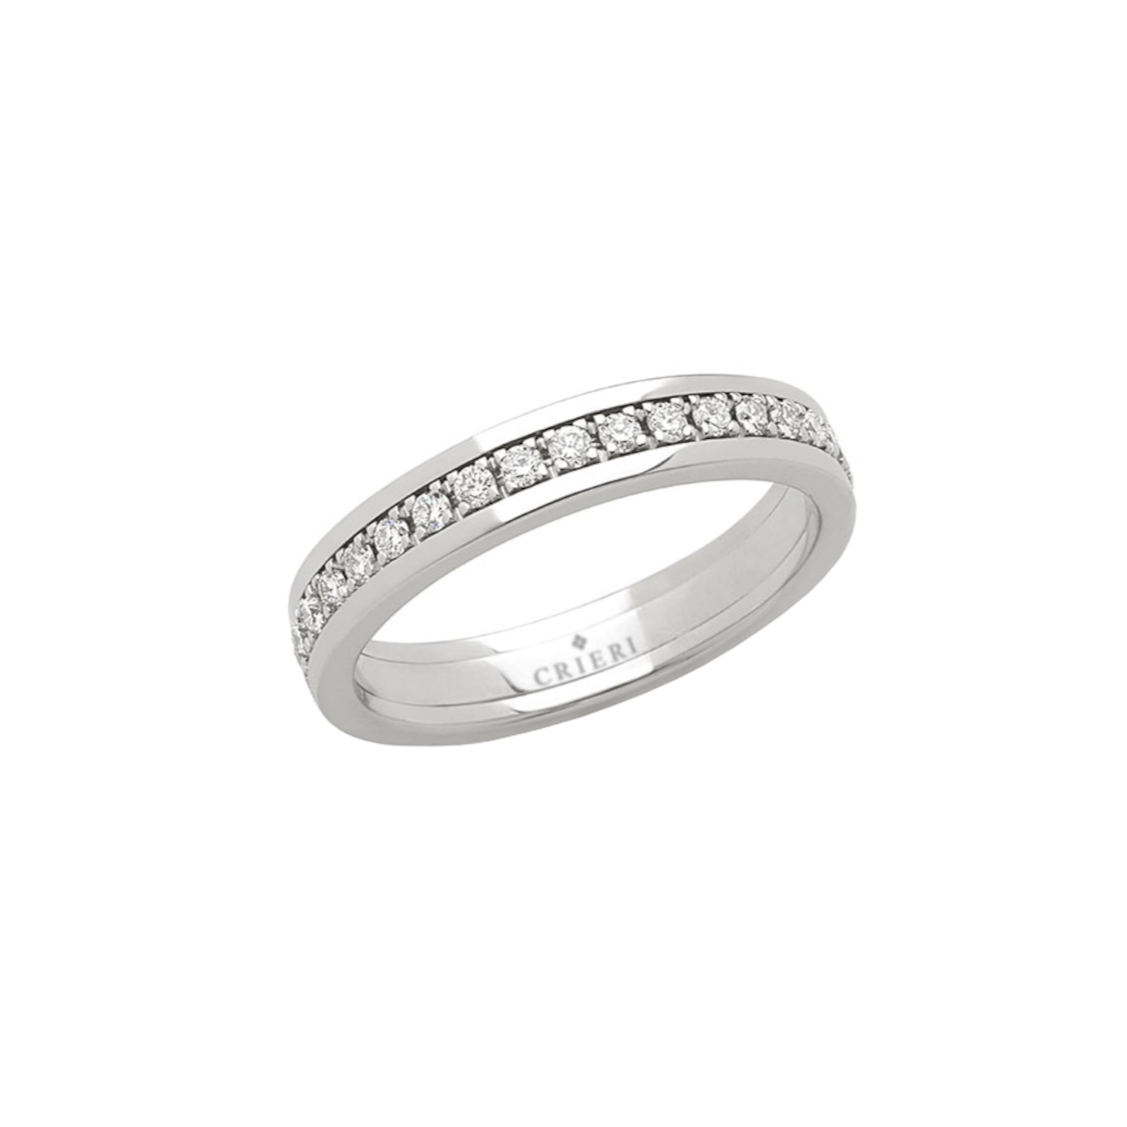 anello modello eternity crieri in oro bianco 18 carati e diamanti bianchi. collezione always.